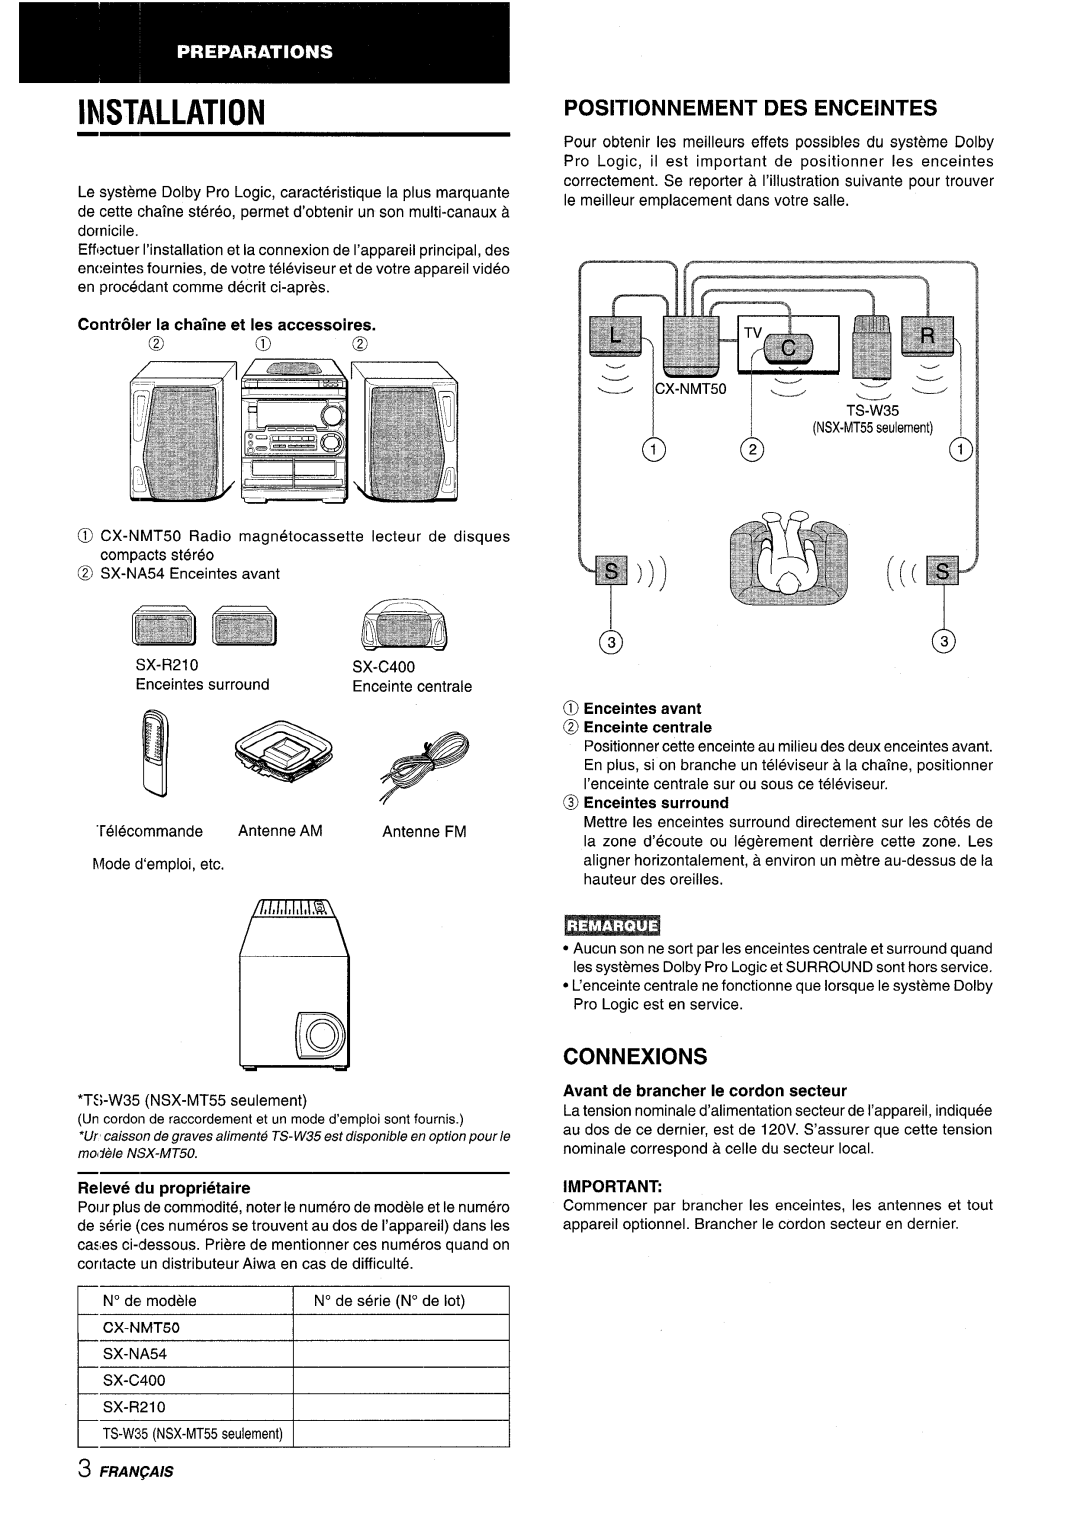 Aiwa CX-NMT50 manual Installation, Positionnement Des Enceintes, Connexions, @ Enceintes avant @ Enceinte centrale 